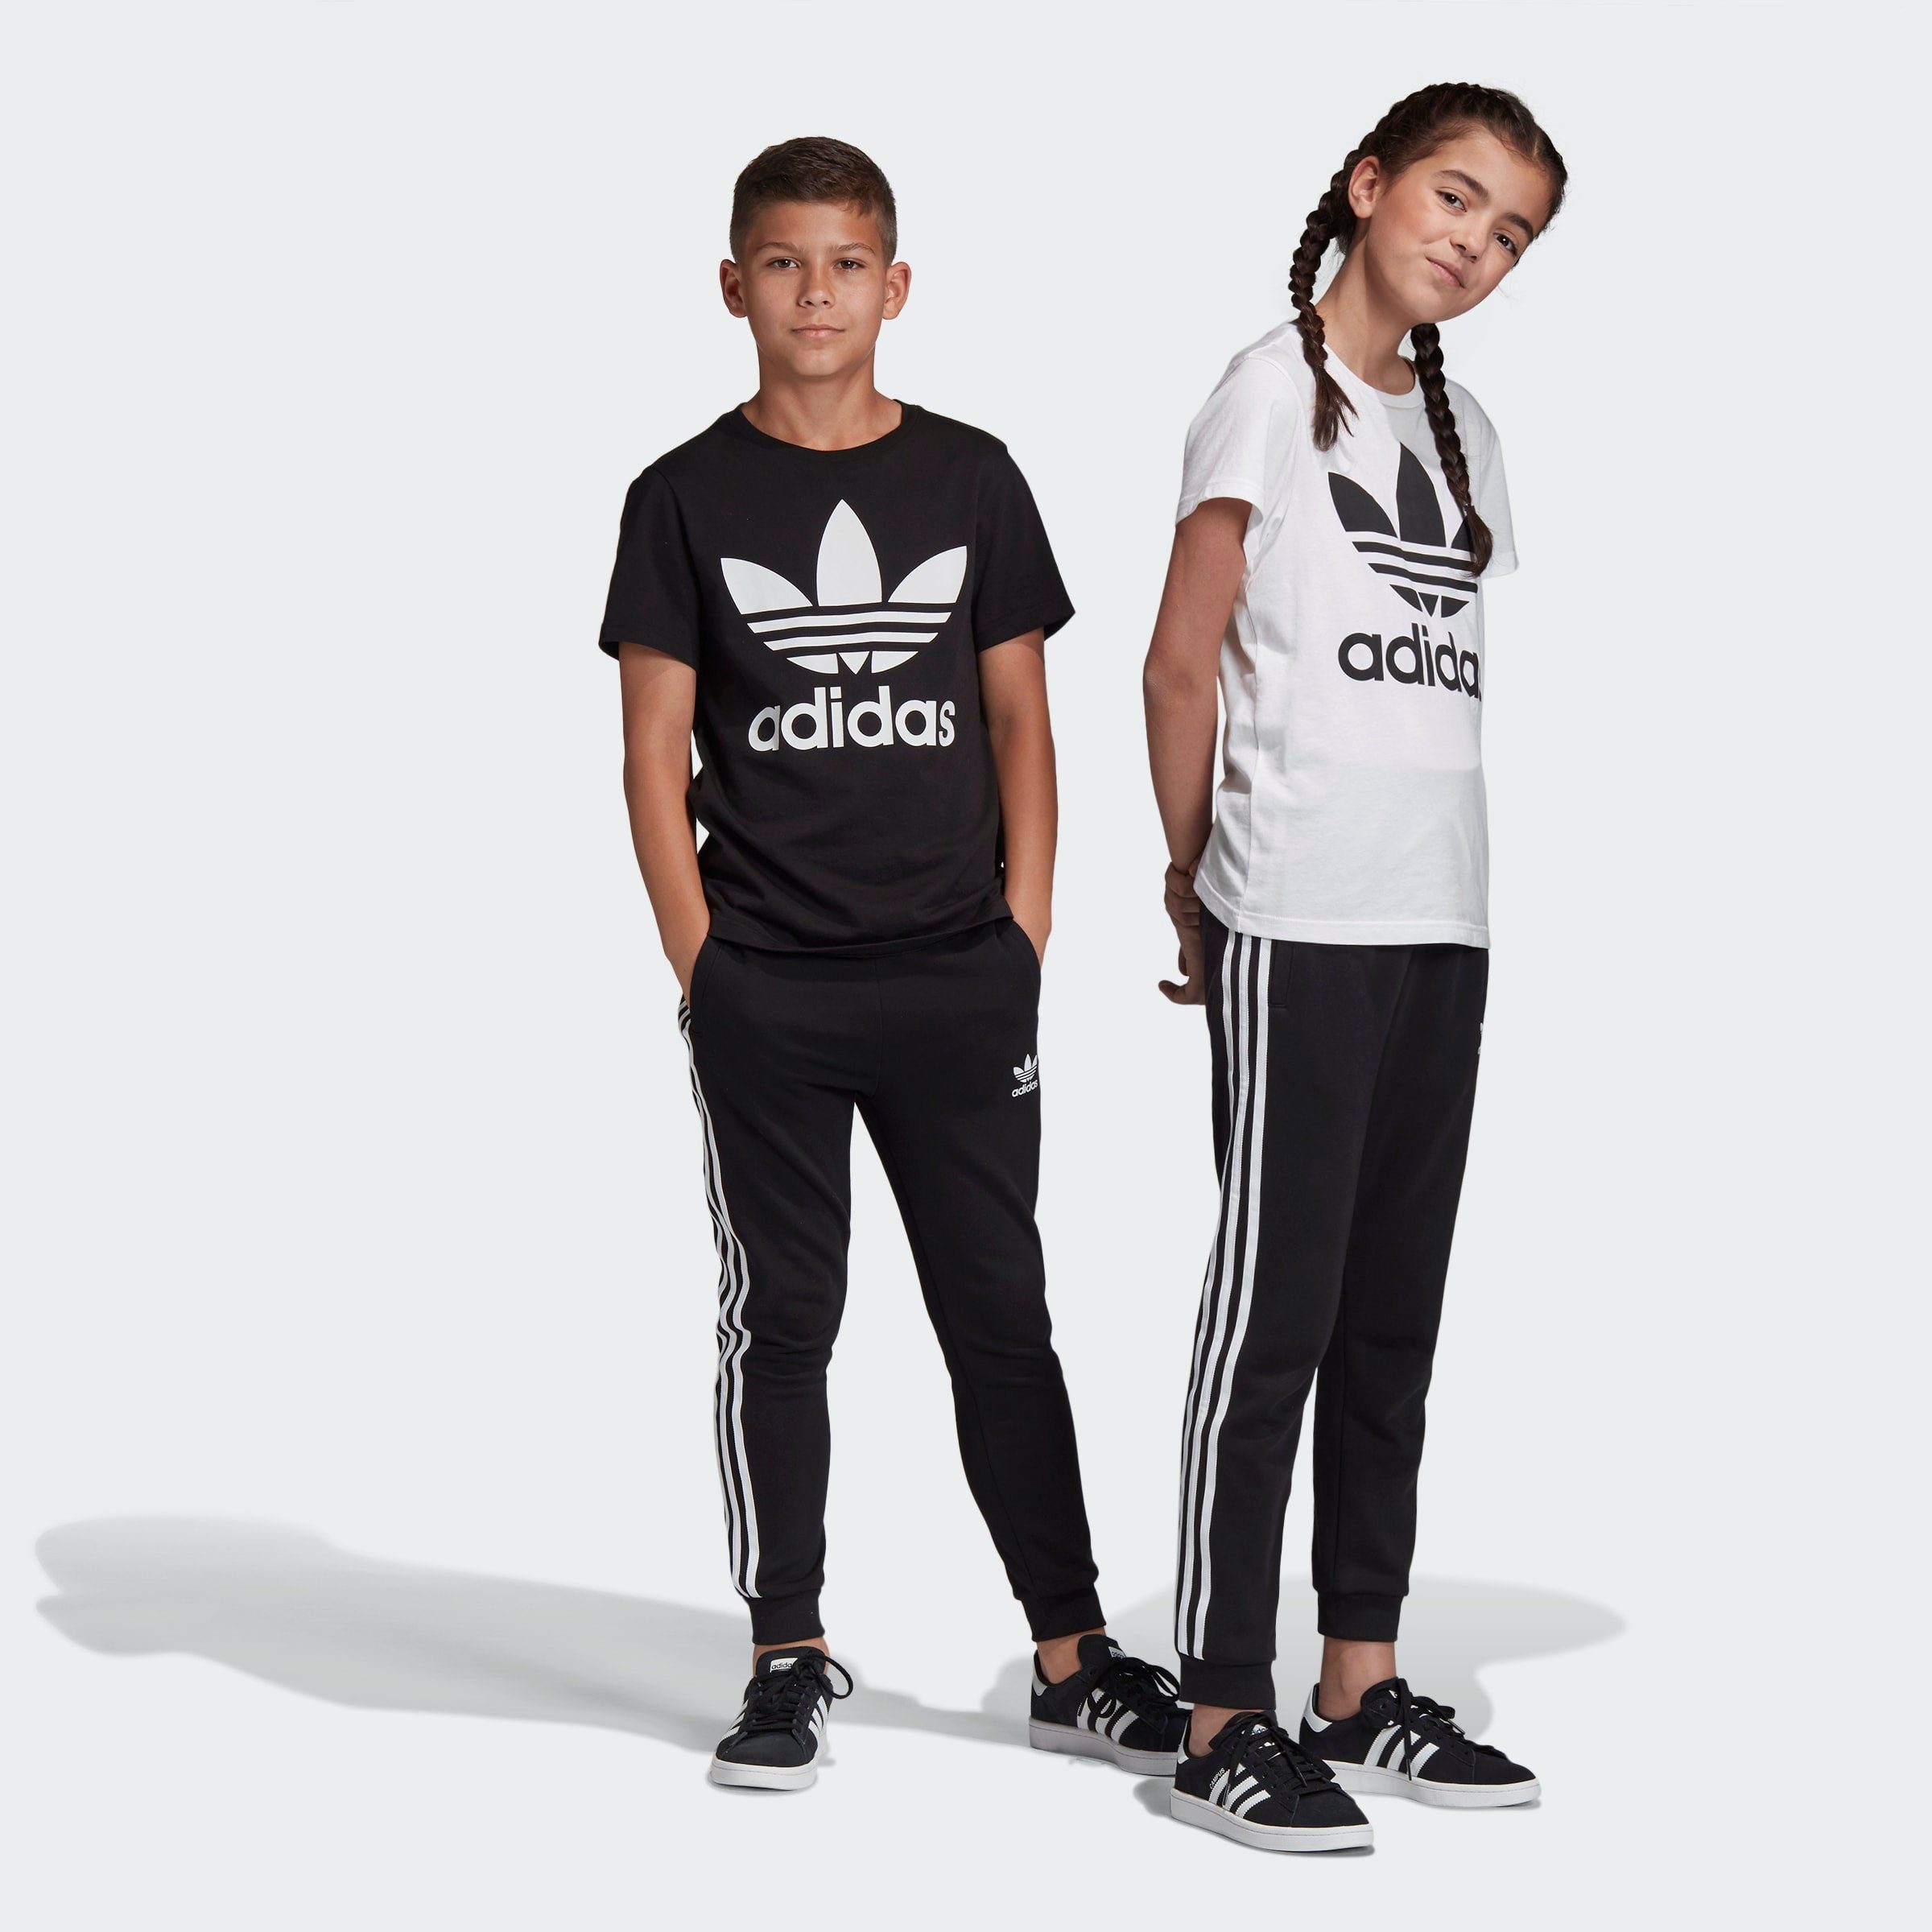 adidas Jungen Sporthosen online kaufen | OTTO